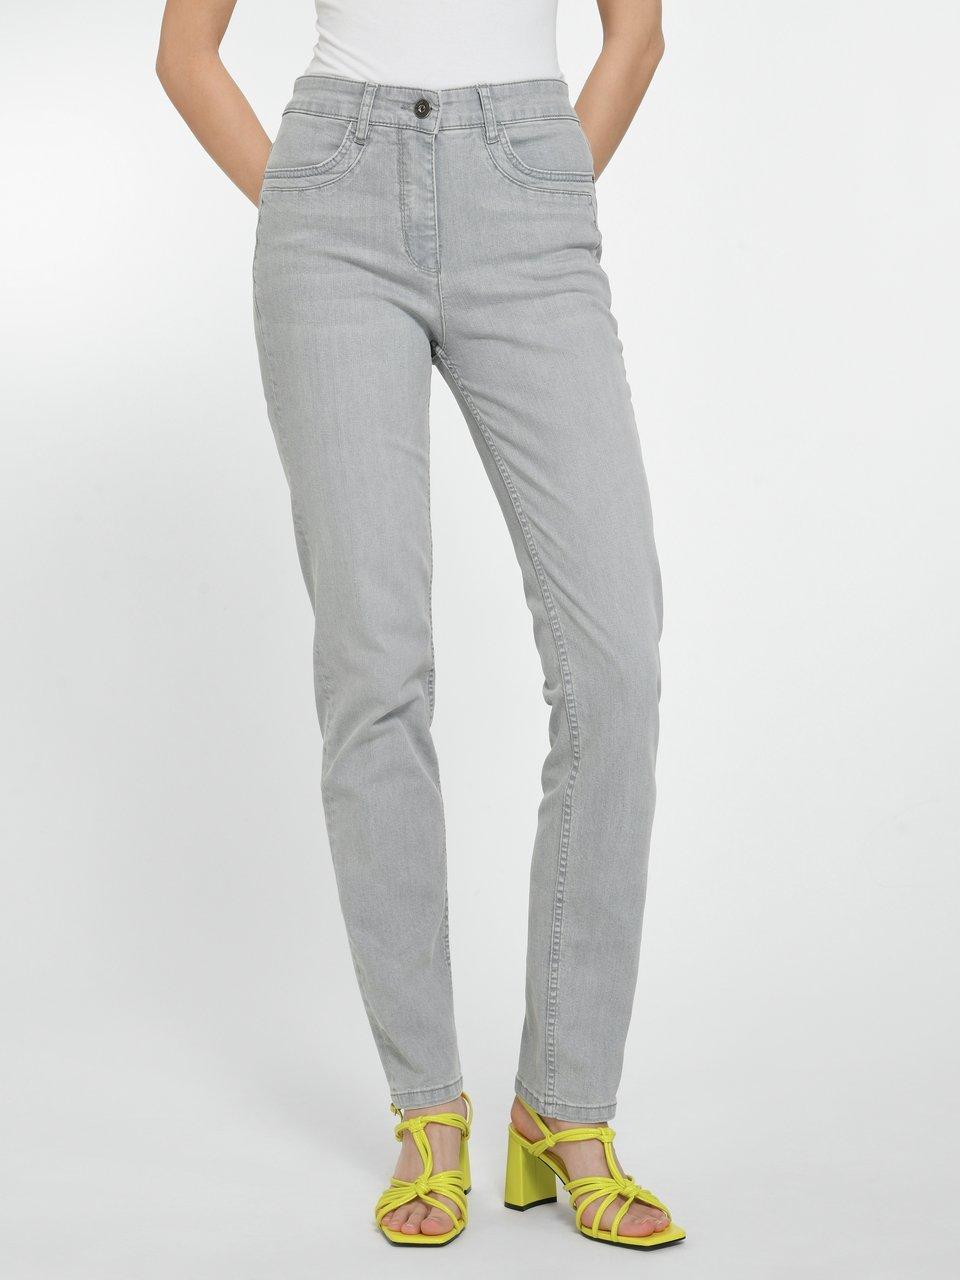 Graue Damen Jeans im Peter Hahn Online-Shop kaufen | Stretchjeans